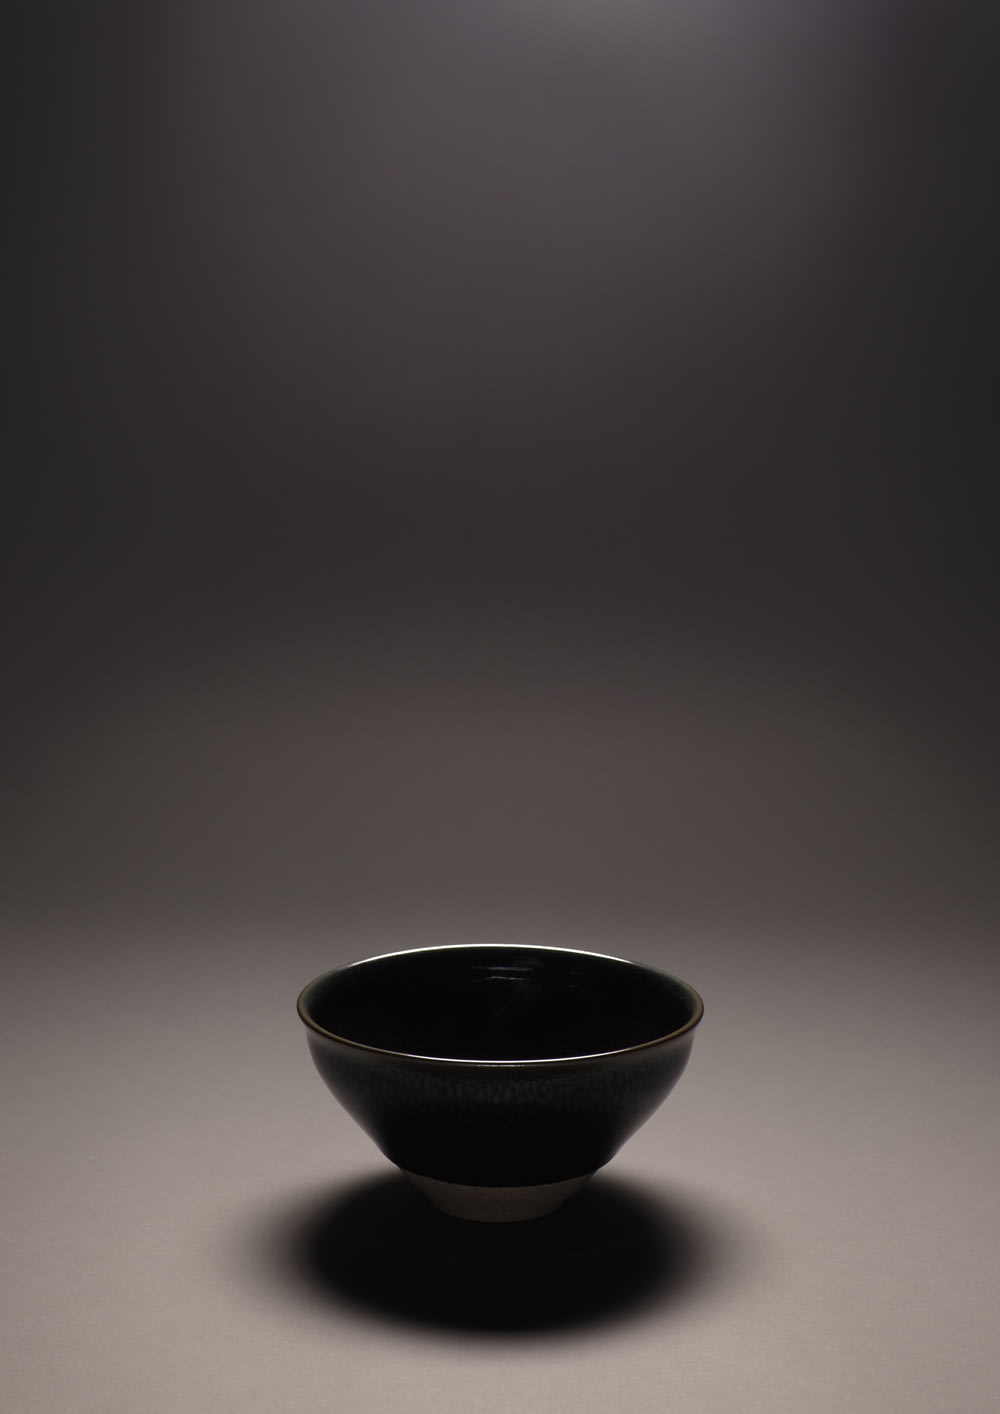 black ceramic bowl on white table